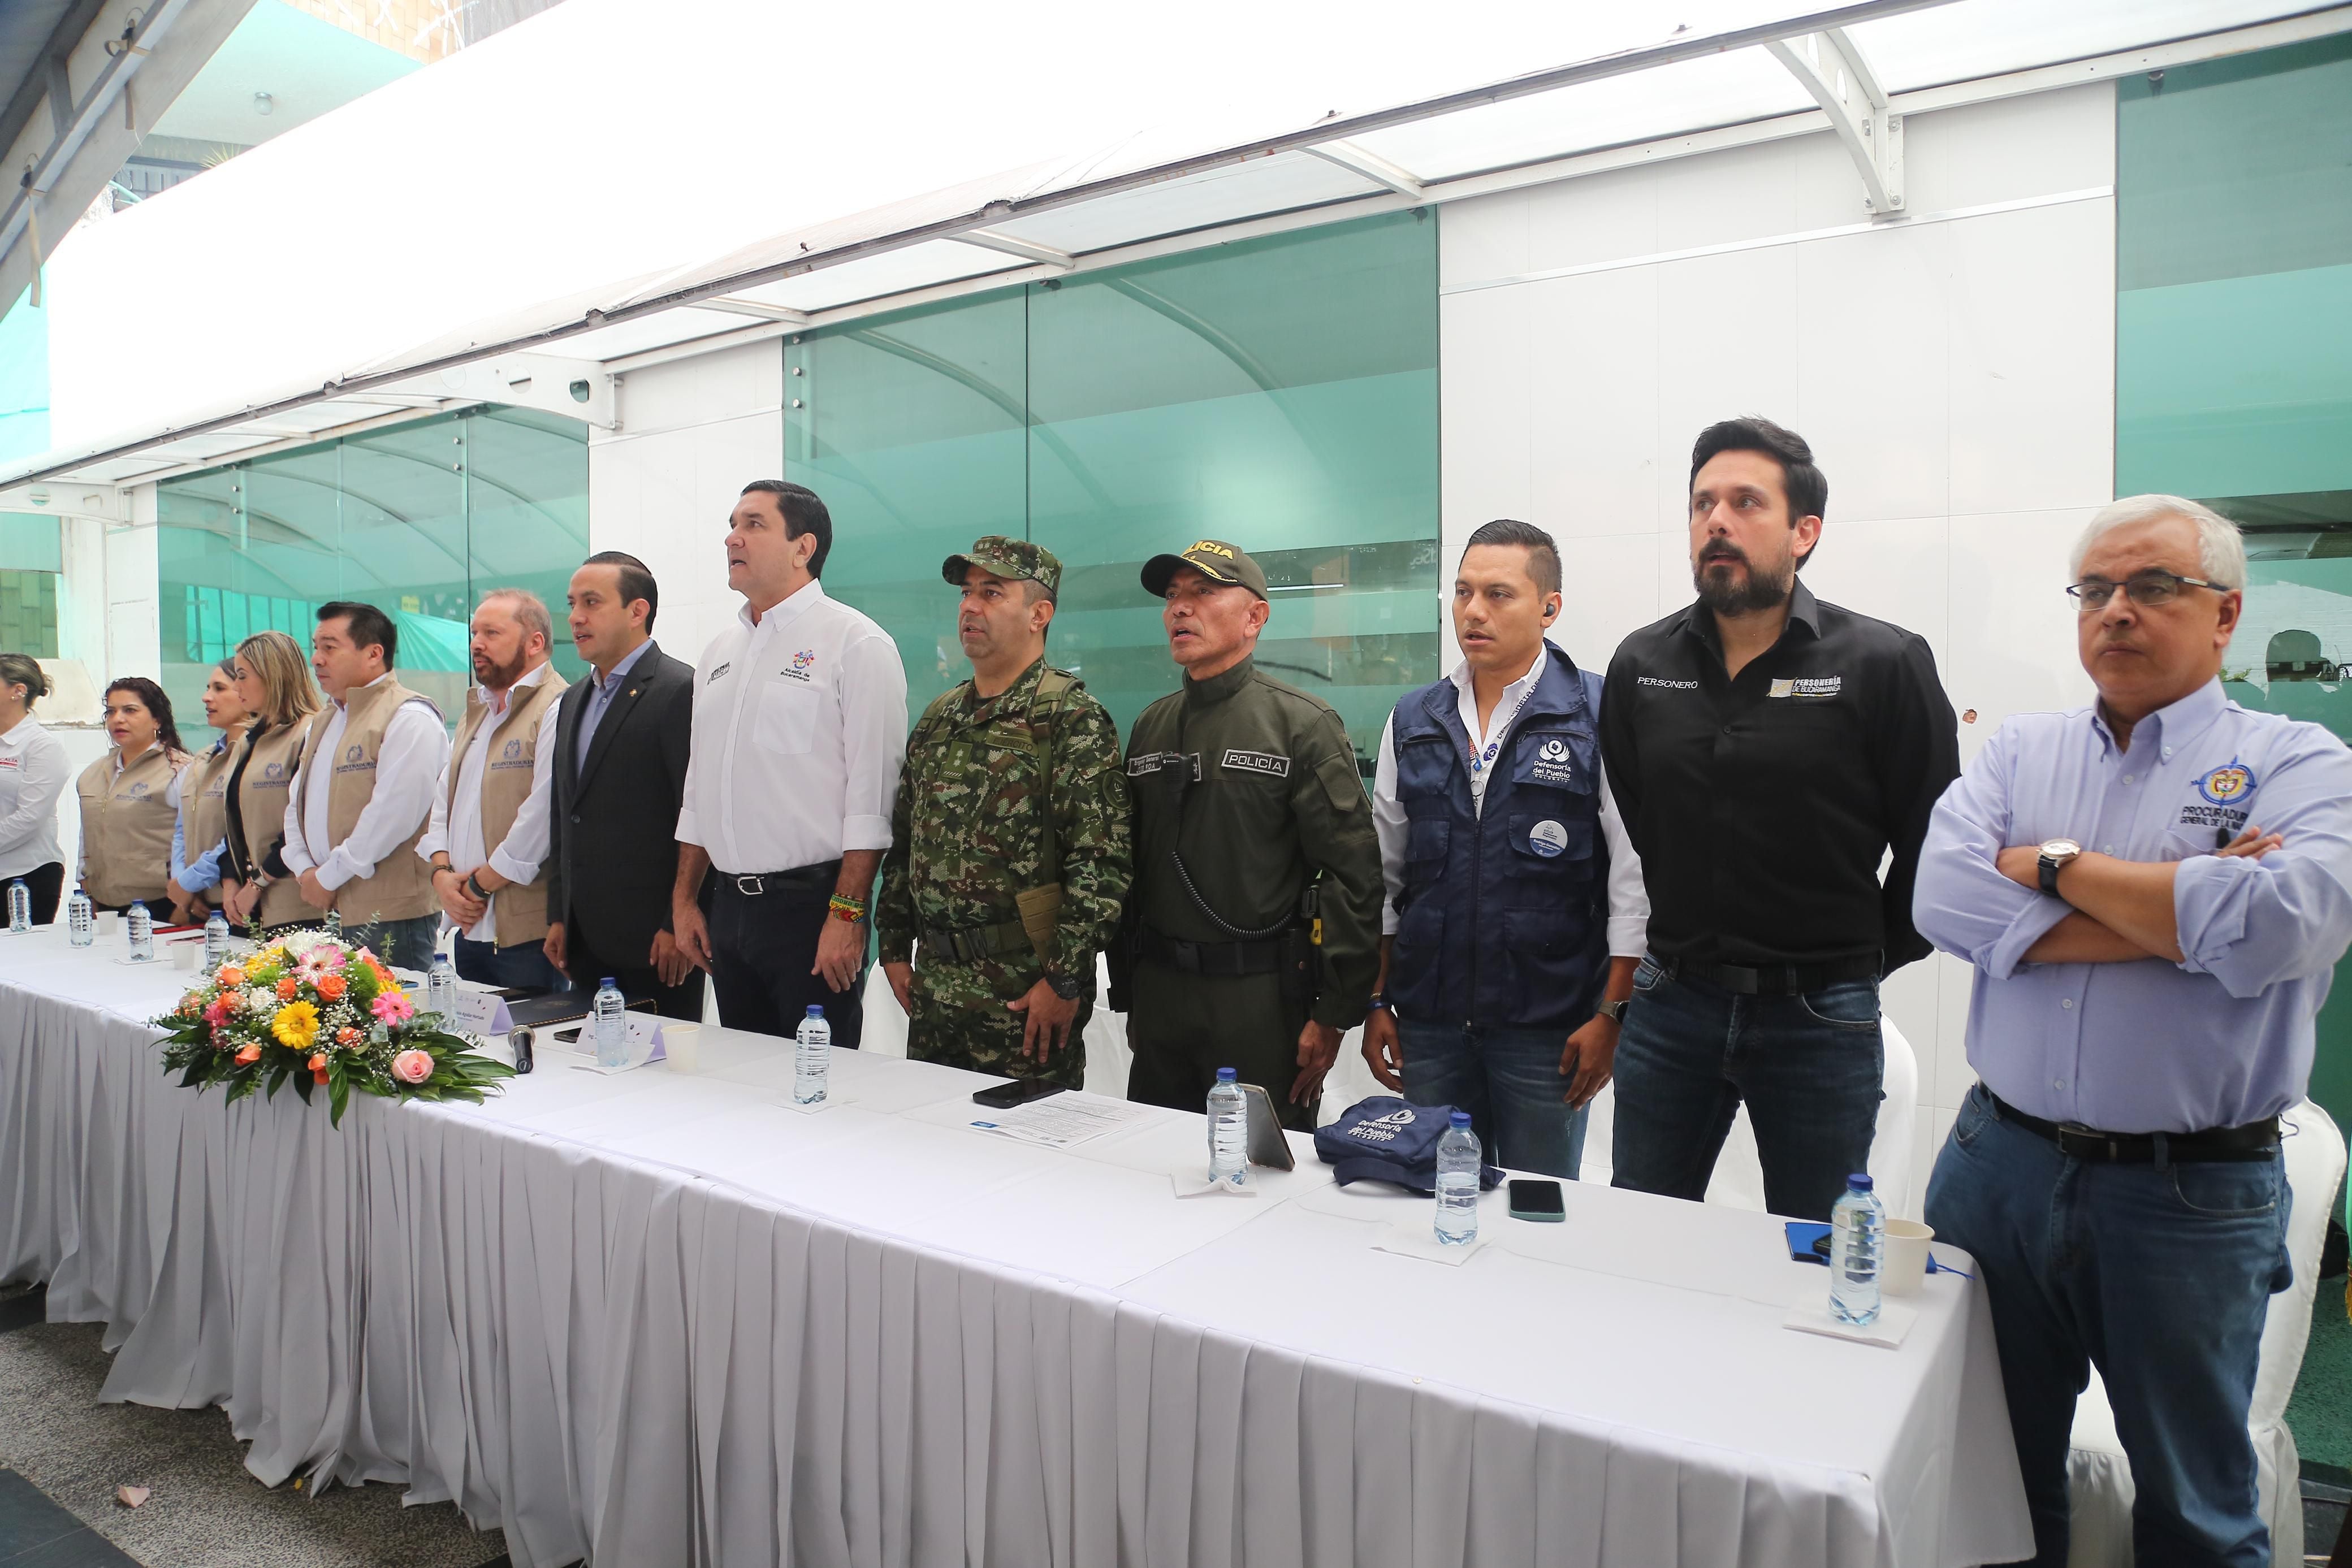 Apertura de las elecciones en la ciudad de Bucaramanga por parte de las autoridades locales - crédito Colprensa